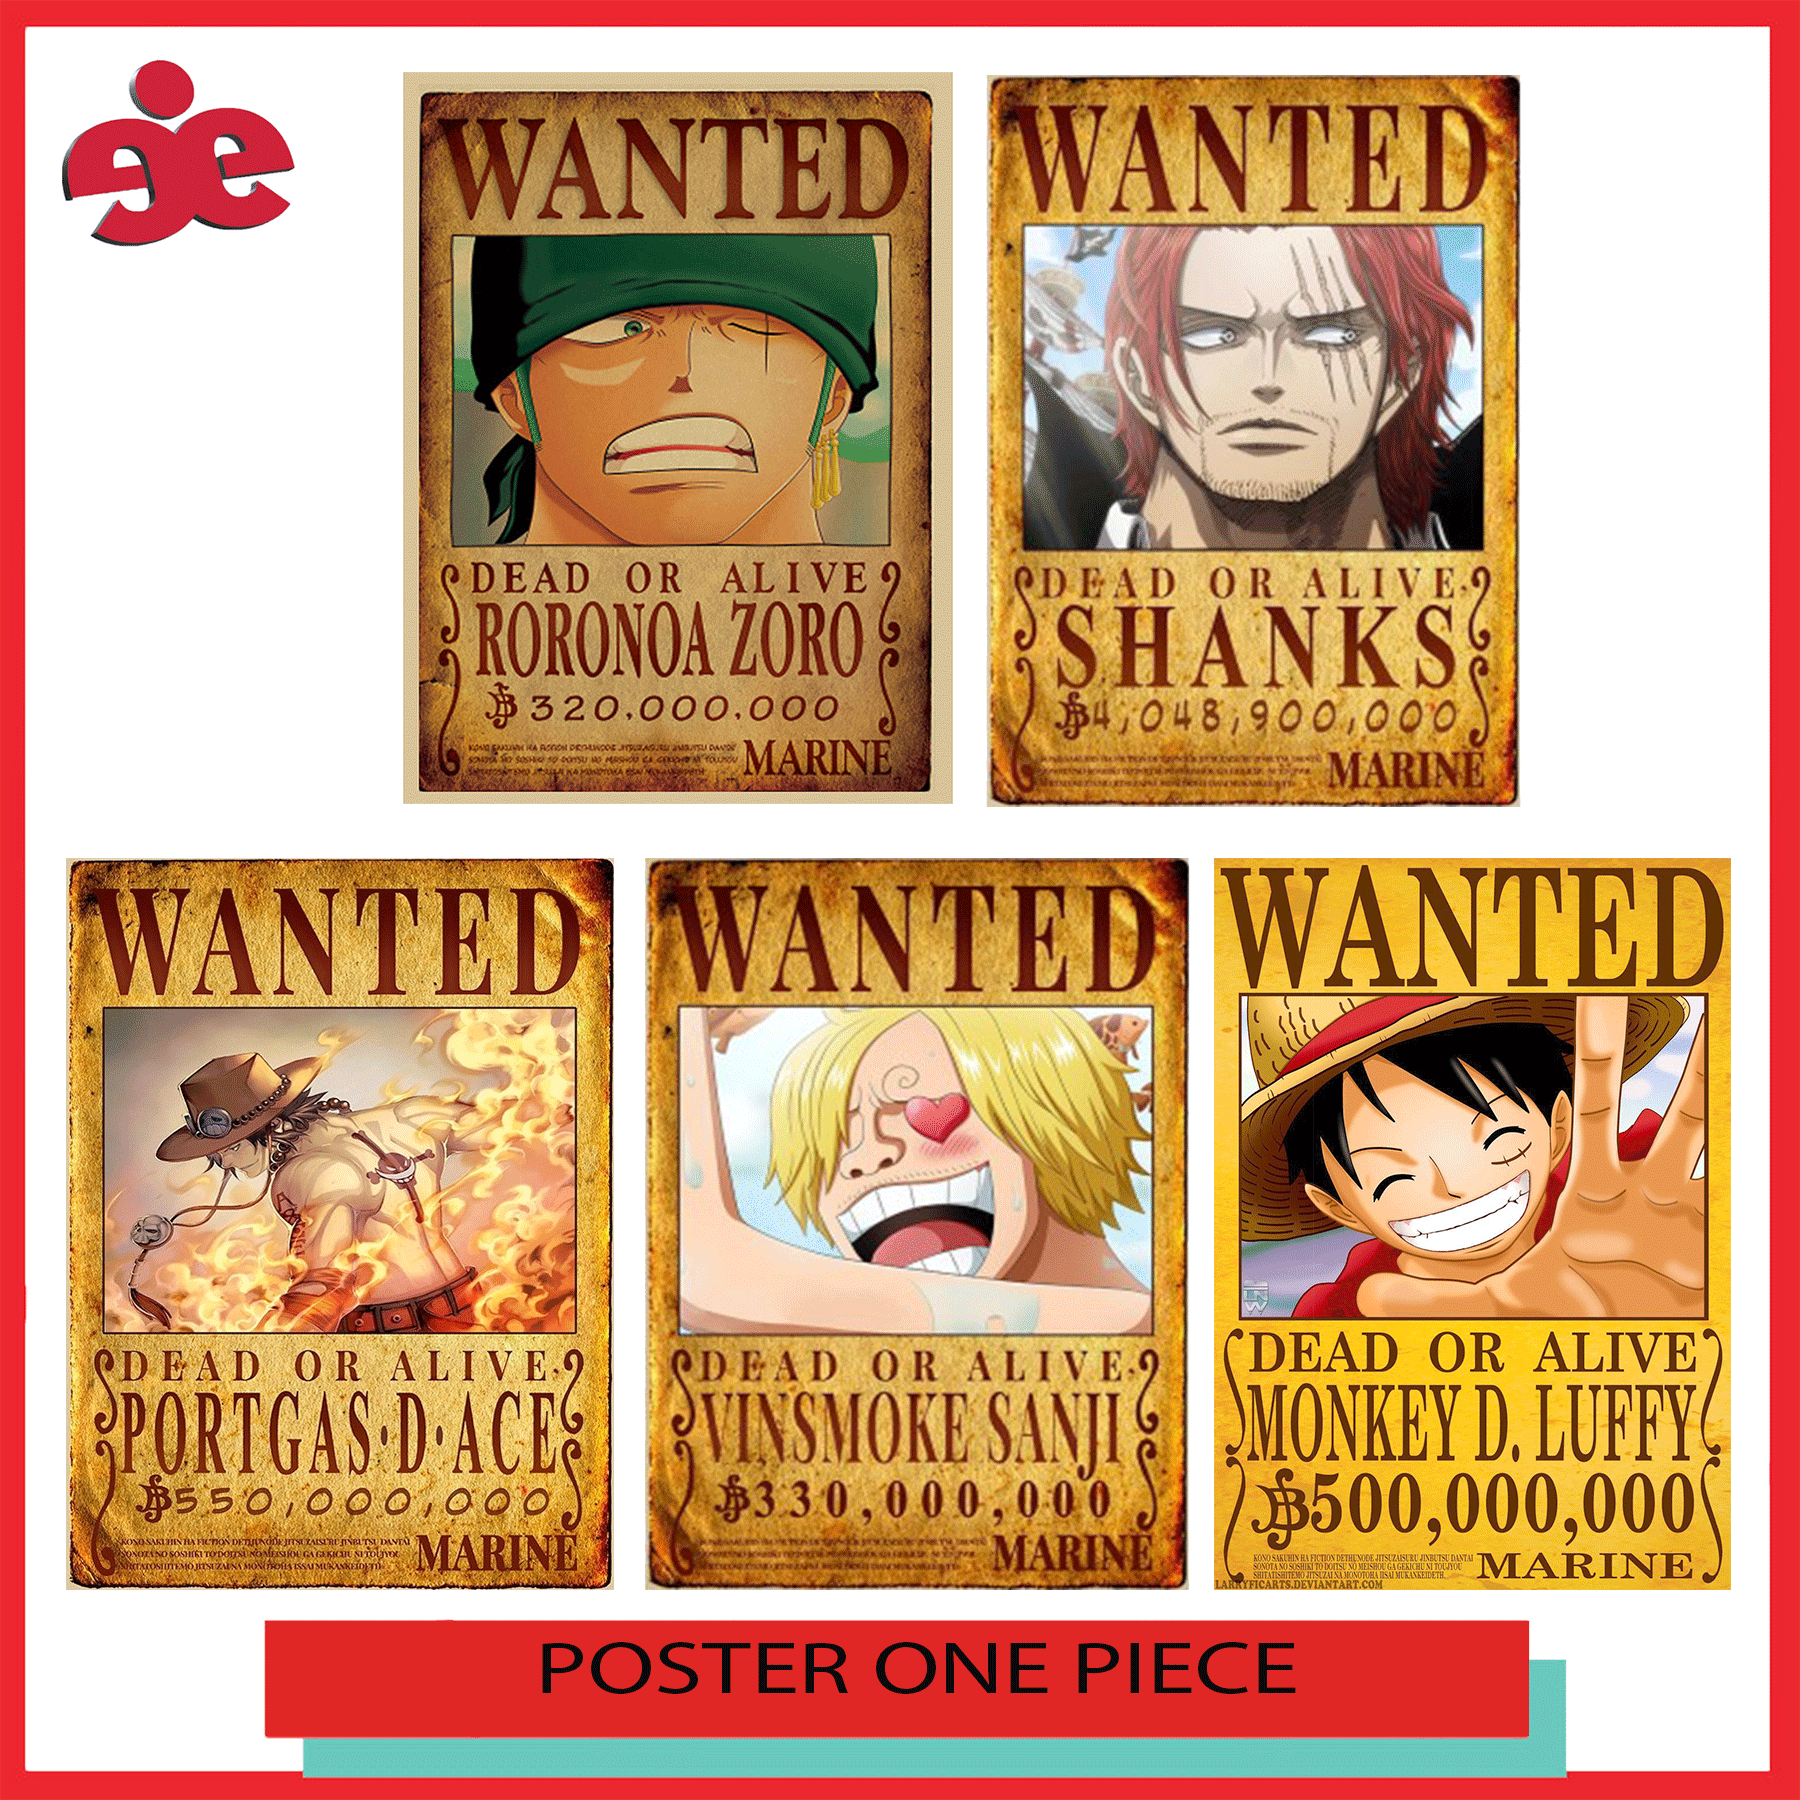 Poster Truy nã One Piece với những hình ảnh nghệ thuật được thực hiện rất tinh xảo và đầy sáng tạo sẽ làm người xem cảm thấy mạnh mẽ và quyết tâm. Sự chân thực của những chi tiết và sự kiên quyết của băng hải tặc Mũ Rơm sẽ khiến bạn tin tưởng vào sức mạnh của bản thân.